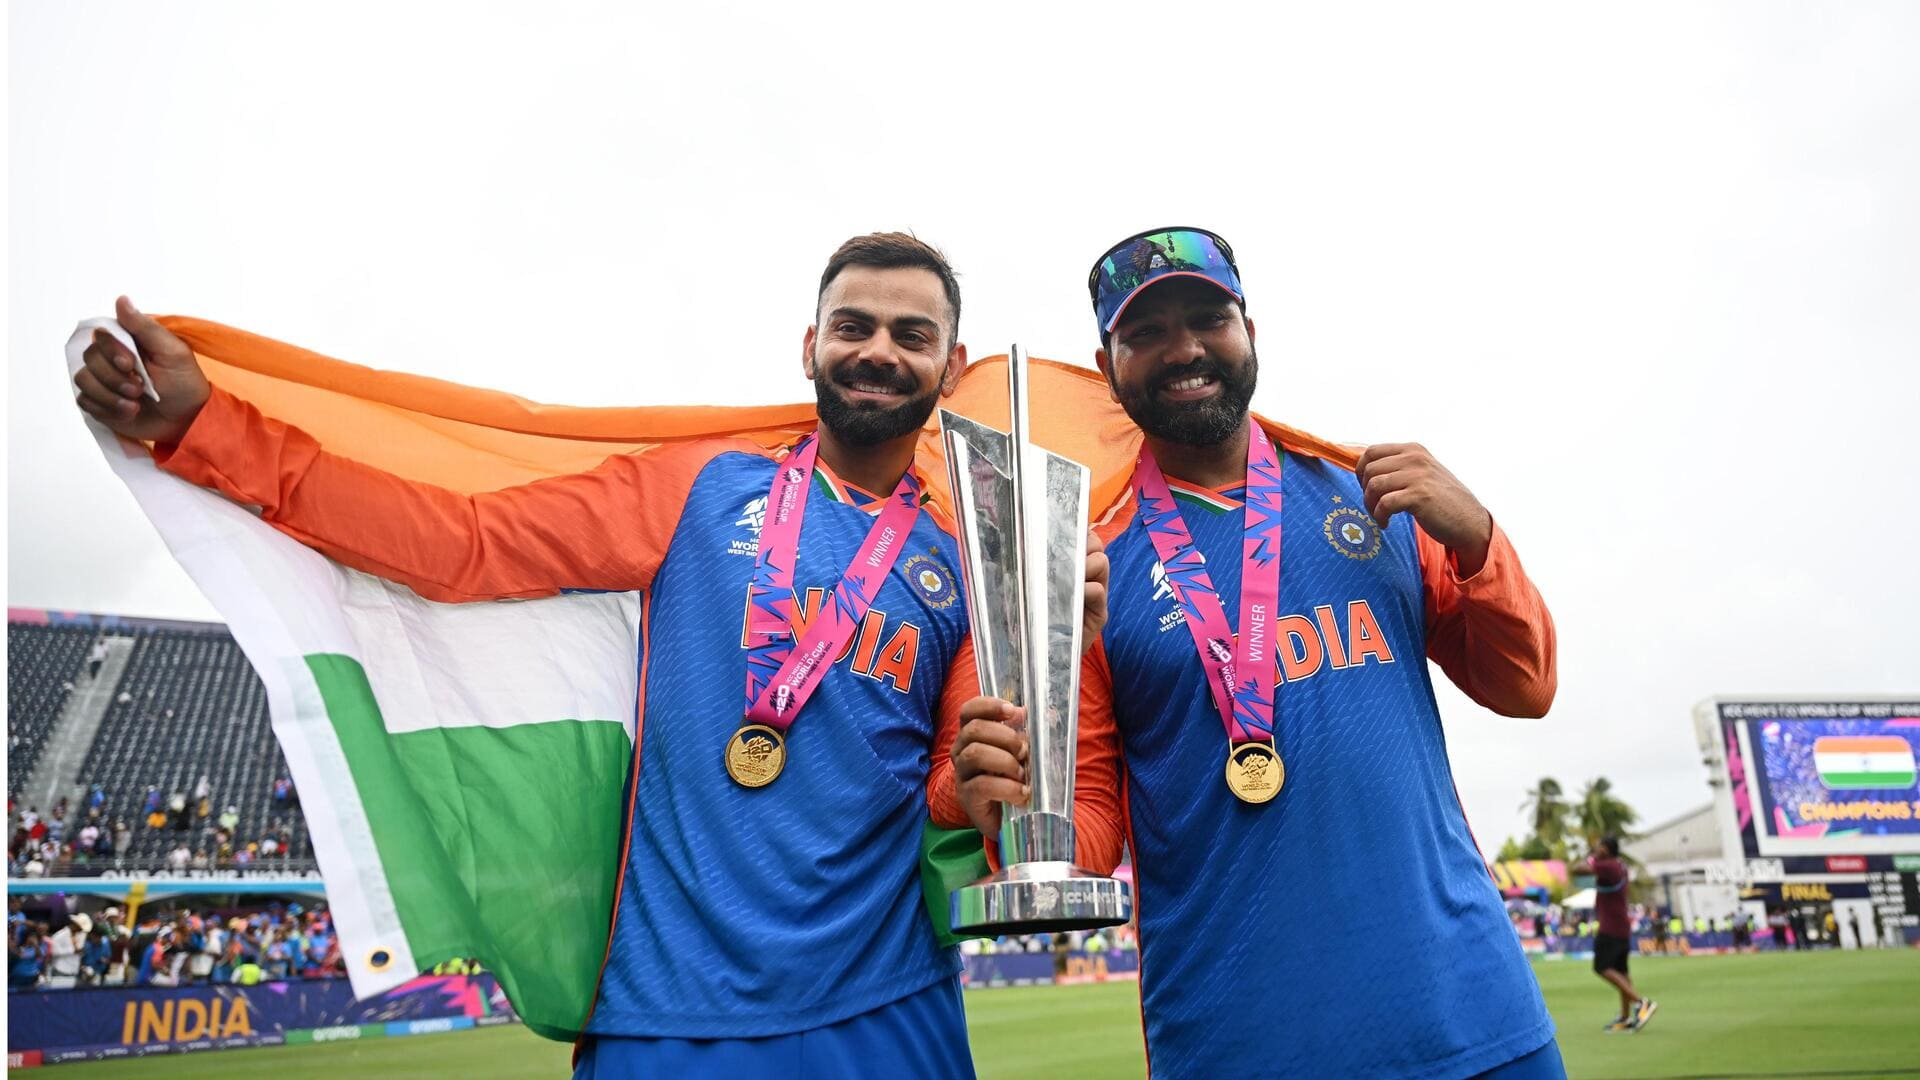 भारतीय टीम ने जीता अपना दूसरा टी-20 विश्व कप खिताब, जानिए क्या रही दिग्गजों की प्रतिक्रियाएं